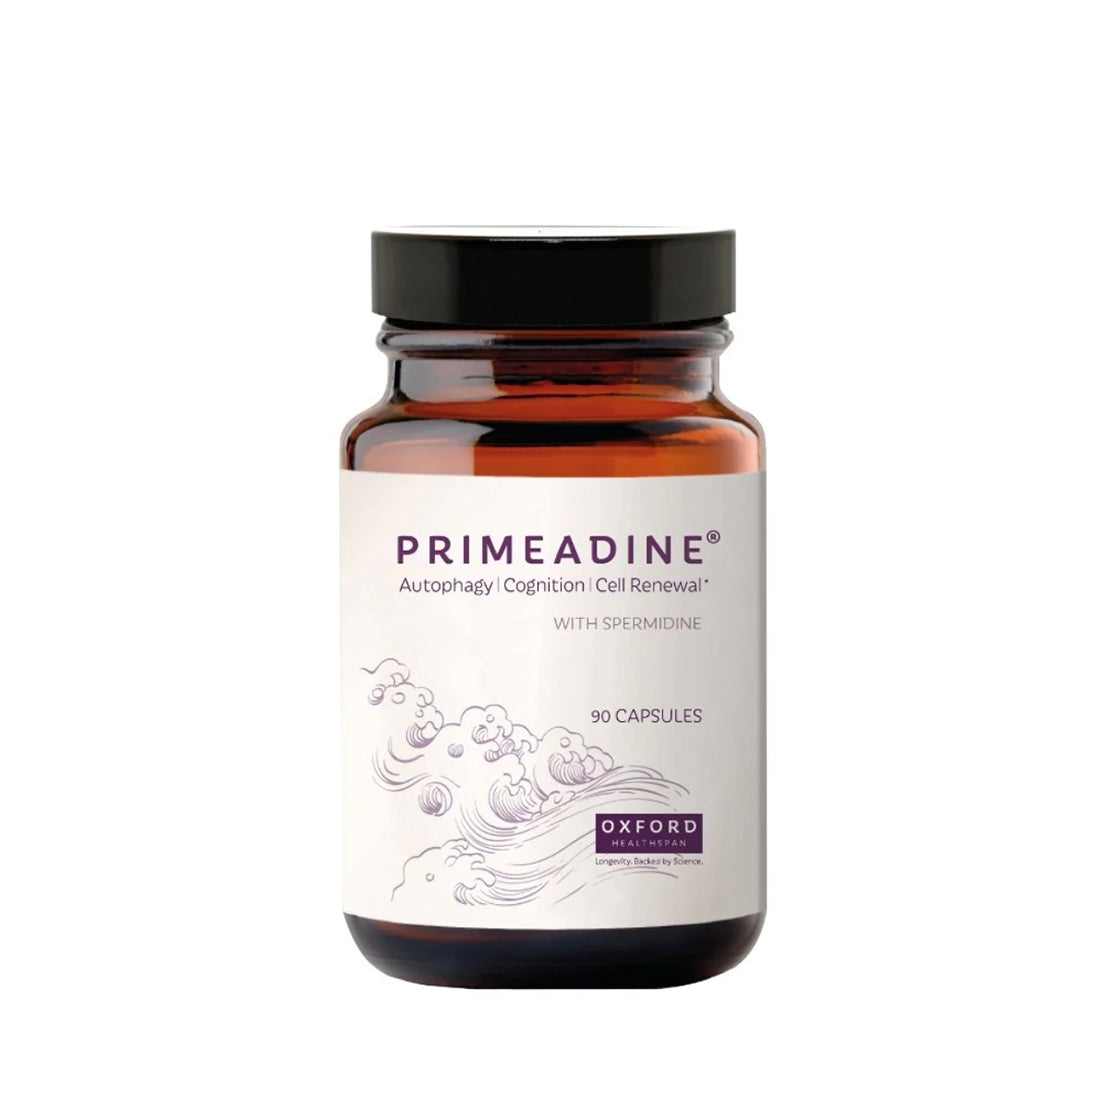 primeadine® (original spermidine supplement) 90 capsules